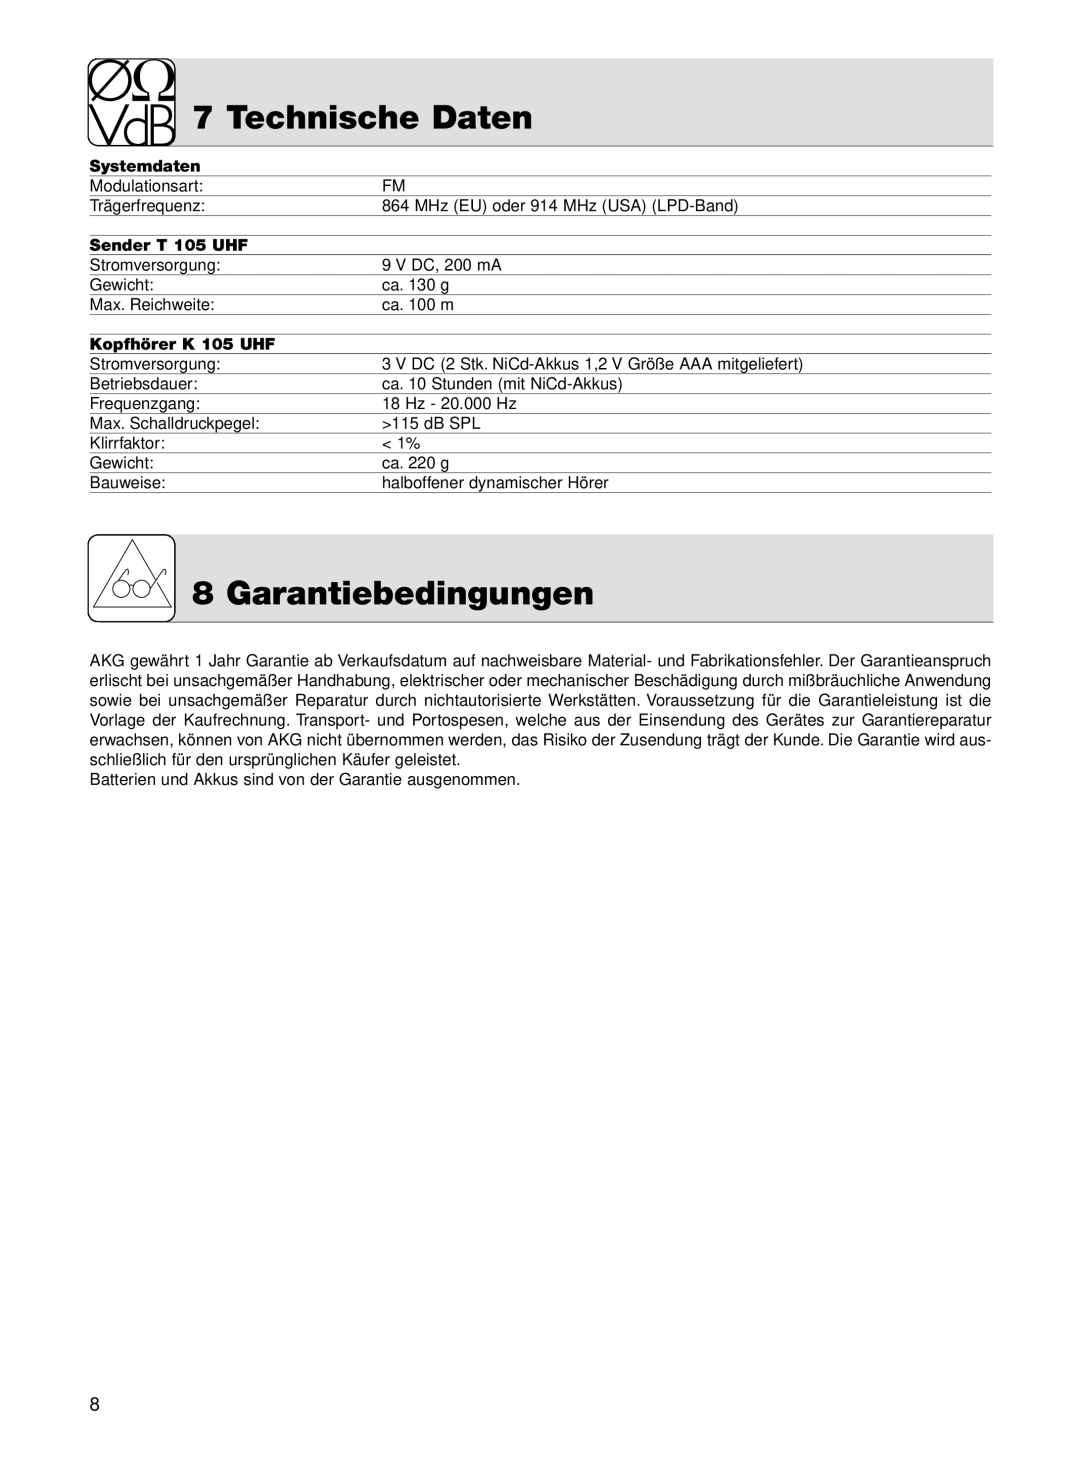 AKG Acoustics manual Technische Daten, Garantiebedingungen, Systemdaten, Sender T 105 UHF, Kopfhörer K 105 UHF 